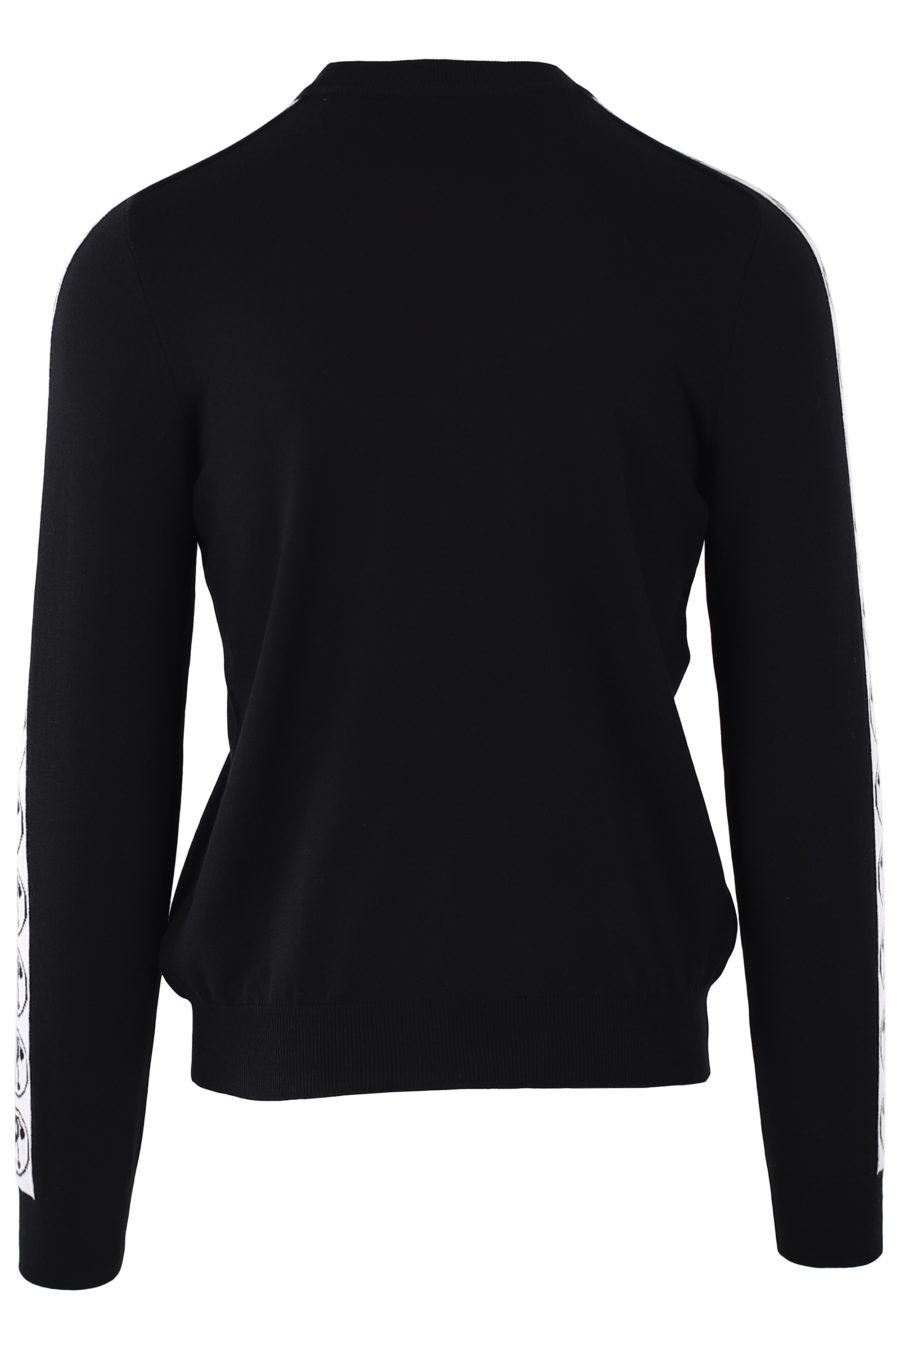 Schwarzer Pullover mit doppeltem Fragezeichen und Ärmelband - IMG 9299